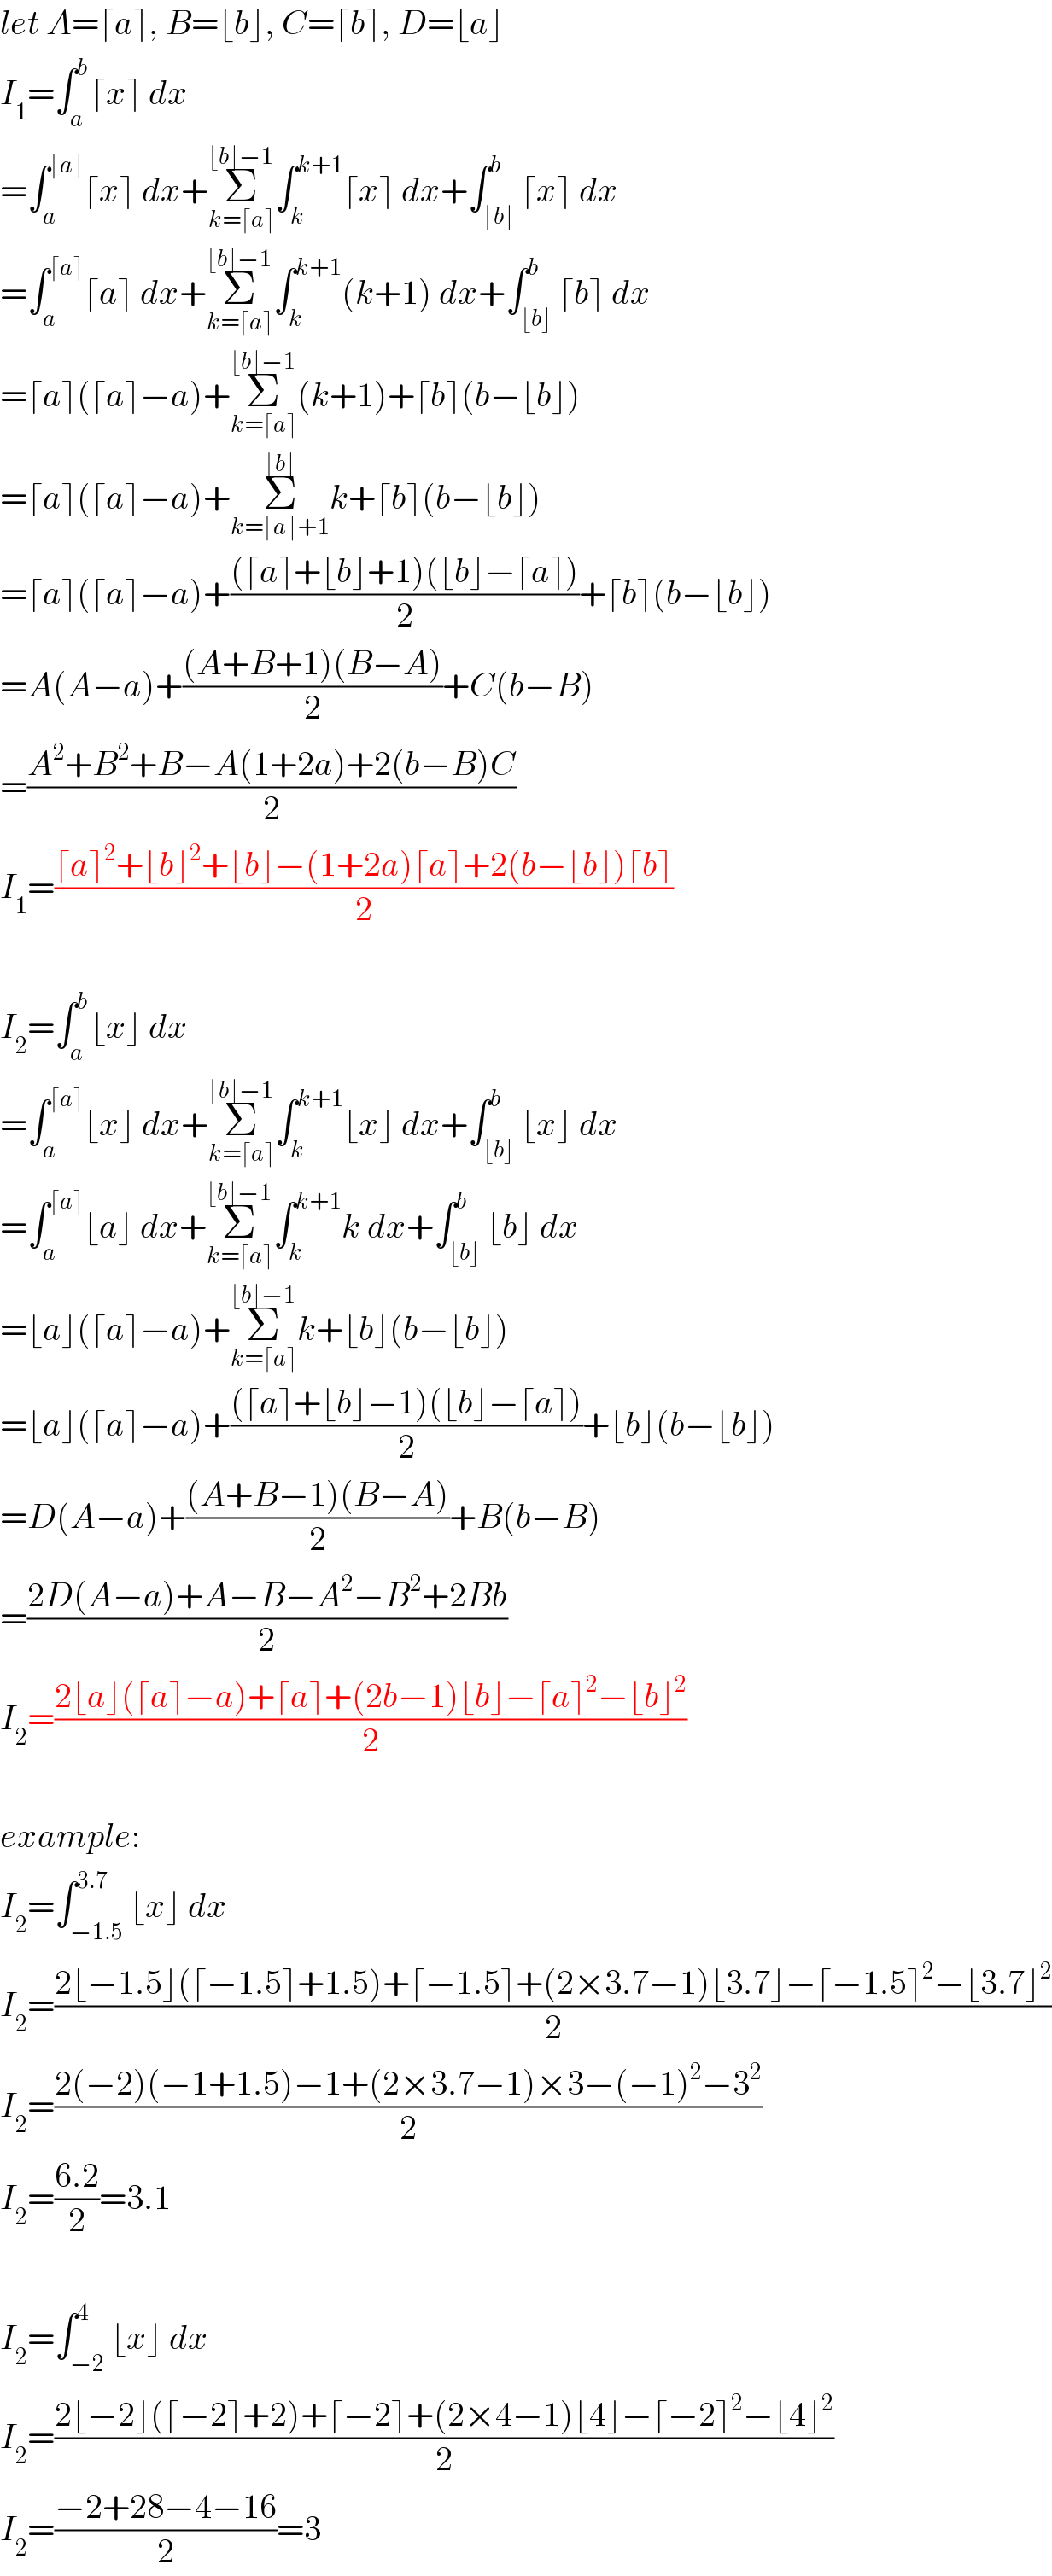 let A=⌈a⌉, B=⌊b⌋, C=⌈b⌉, D=⌊a⌋  I_1 =∫_a ^b ⌈x⌉ dx  =∫_a ^(⌈a⌉) ⌈x⌉ dx+Σ_(k=⌈a⌉) ^(⌊b⌋−1) ∫_k ^(k+1) ⌈x⌉ dx+∫_(⌊b⌋) ^b ⌈x⌉ dx  =∫_a ^(⌈a⌉) ⌈a⌉ dx+Σ_(k=⌈a⌉) ^(⌊b⌋−1) ∫_k ^(k+1) (k+1) dx+∫_(⌊b⌋) ^b ⌈b⌉ dx  =⌈a⌉(⌈a⌉−a)+Σ_(k=⌈a⌉) ^(⌊b⌋−1) (k+1)+⌈b⌉(b−⌊b⌋)  =⌈a⌉(⌈a⌉−a)+Σ_(k=⌈a⌉+1) ^(⌊b⌋) k+⌈b⌉(b−⌊b⌋)  =⌈a⌉(⌈a⌉−a)+(((⌈a⌉+⌊b⌋+1)(⌊b⌋−⌈a⌉))/2)+⌈b⌉(b−⌊b⌋)  =A(A−a)+(((A+B+1)(B−A))/2)+C(b−B)  =((A^2 +B^2 +B−A(1+2a)+2(b−B)C)/2)  I_1 =((⌈a⌉^2 +⌊b⌋^2 +⌊b⌋−(1+2a)⌈a⌉+2(b−⌊b⌋)⌈b⌉)/2)    I_2 =∫_a ^b ⌊x⌋ dx  =∫_a ^(⌈a⌉) ⌊x⌋ dx+Σ_(k=⌈a⌉) ^(⌊b⌋−1) ∫_k ^(k+1) ⌊x⌋ dx+∫_(⌊b⌋) ^b ⌊x⌋ dx  =∫_a ^(⌈a⌉) ⌊a⌋ dx+Σ_(k=⌈a⌉) ^(⌊b⌋−1) ∫_k ^(k+1) k dx+∫_(⌊b⌋) ^b ⌊b⌋ dx  =⌊a⌋(⌈a⌉−a)+Σ_(k=⌈a⌉) ^(⌊b⌋−1) k+⌊b⌋(b−⌊b⌋)  =⌊a⌋(⌈a⌉−a)+(((⌈a⌉+⌊b⌋−1)(⌊b⌋−⌈a⌉))/2)+⌊b⌋(b−⌊b⌋)  =D(A−a)+(((A+B−1)(B−A))/2)+B(b−B)  =((2D(A−a)+A−B−A^2 −B^2 +2Bb)/2)  I_2 =((2⌊a⌋(⌈a⌉−a)+⌈a⌉+(2b−1)⌊b⌋−⌈a⌉^2 −⌊b⌋^2 )/2)    example:  I_2 =∫_(−1.5) ^(3.7) ⌊x⌋ dx  I_2 =((2⌊−1.5⌋(⌈−1.5⌉+1.5)+⌈−1.5⌉+(2×3.7−1)⌊3.7⌋−⌈−1.5⌉^2 −⌊3.7⌋^2 )/2)  I_2 =((2(−2)(−1+1.5)−1+(2×3.7−1)×3−(−1)^2 −3^2 )/2)  I_2 =((6.2)/2)=3.1    I_2 =∫_(−2) ^4 ⌊x⌋ dx  I_2 =((2⌊−2⌋(⌈−2⌉+2)+⌈−2⌉+(2×4−1)⌊4⌋−⌈−2⌉^2 −⌊4⌋^2 )/2)  I_2 =((−2+28−4−16)/2)=3  